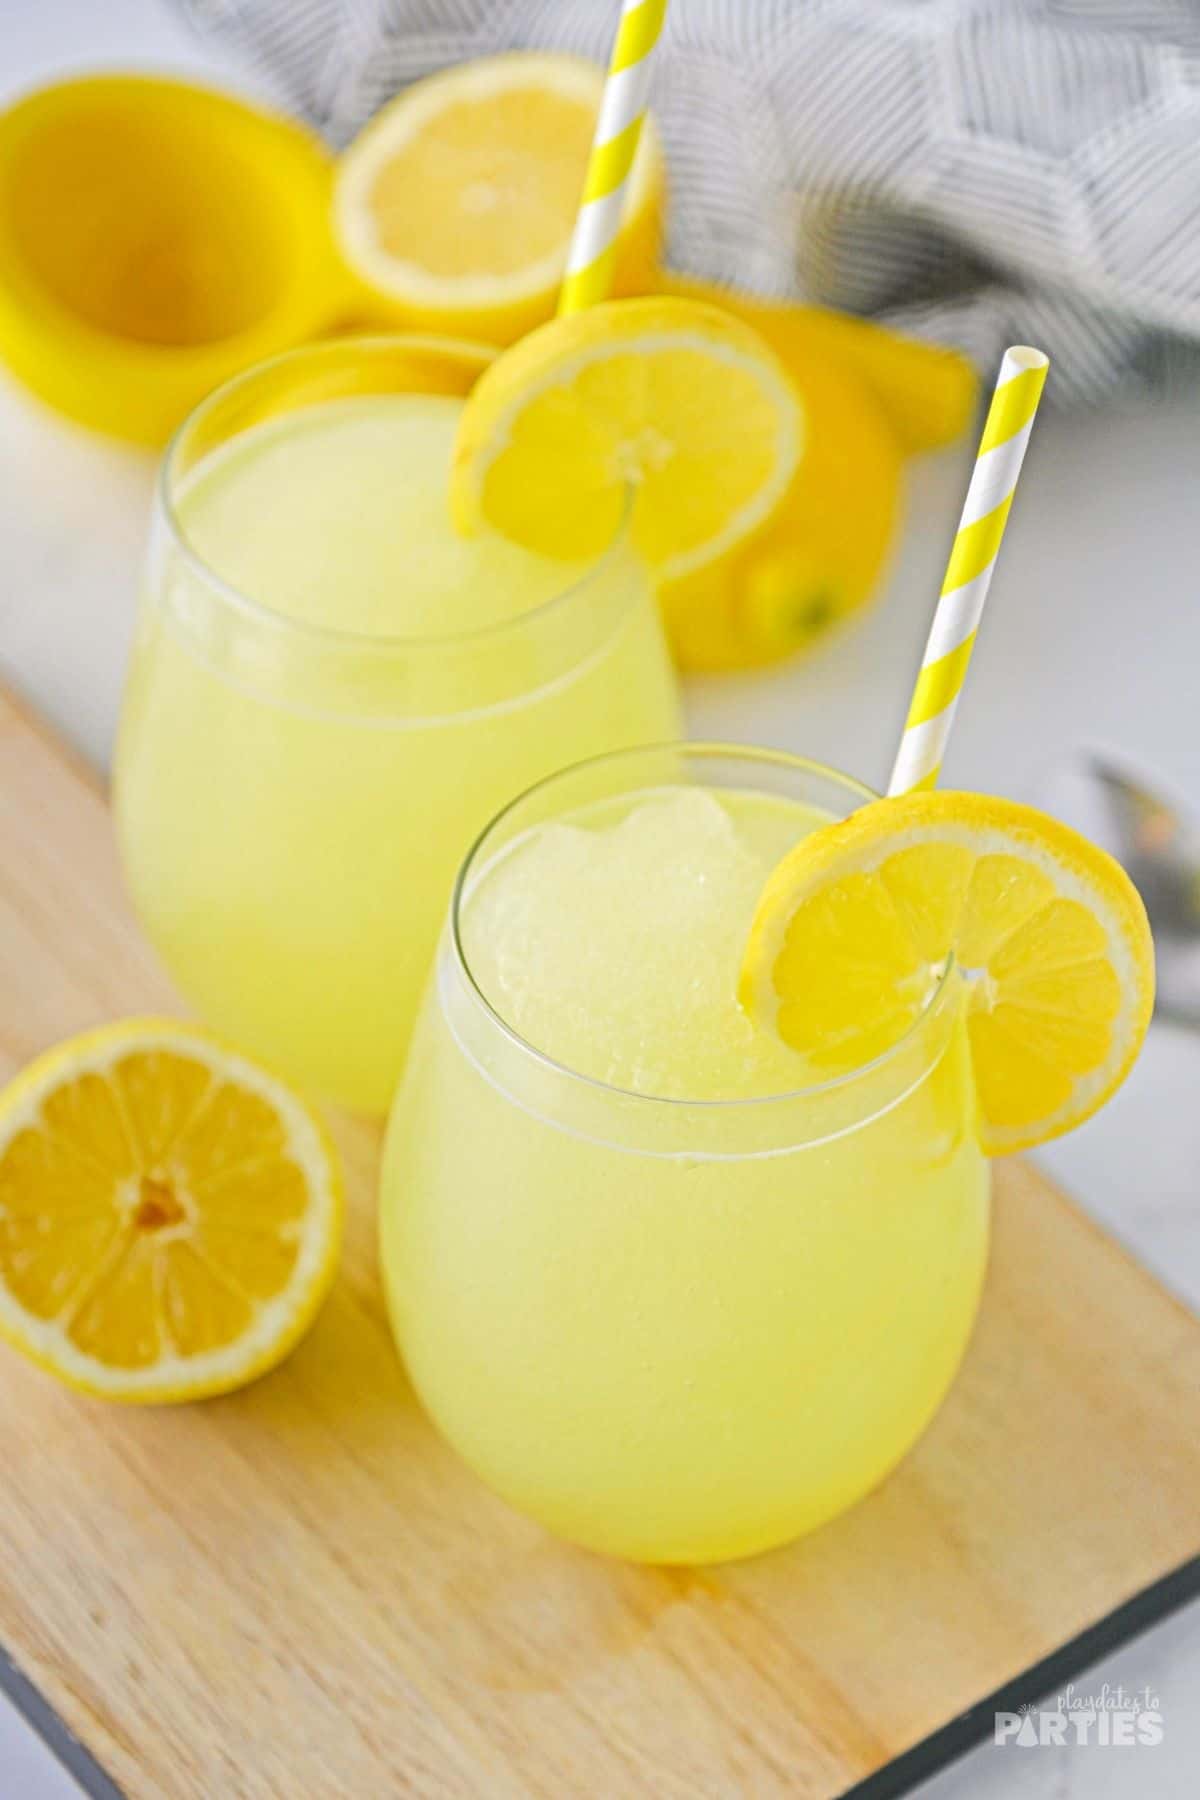 Frozen lemonade in two stemless glasses on a wood board.